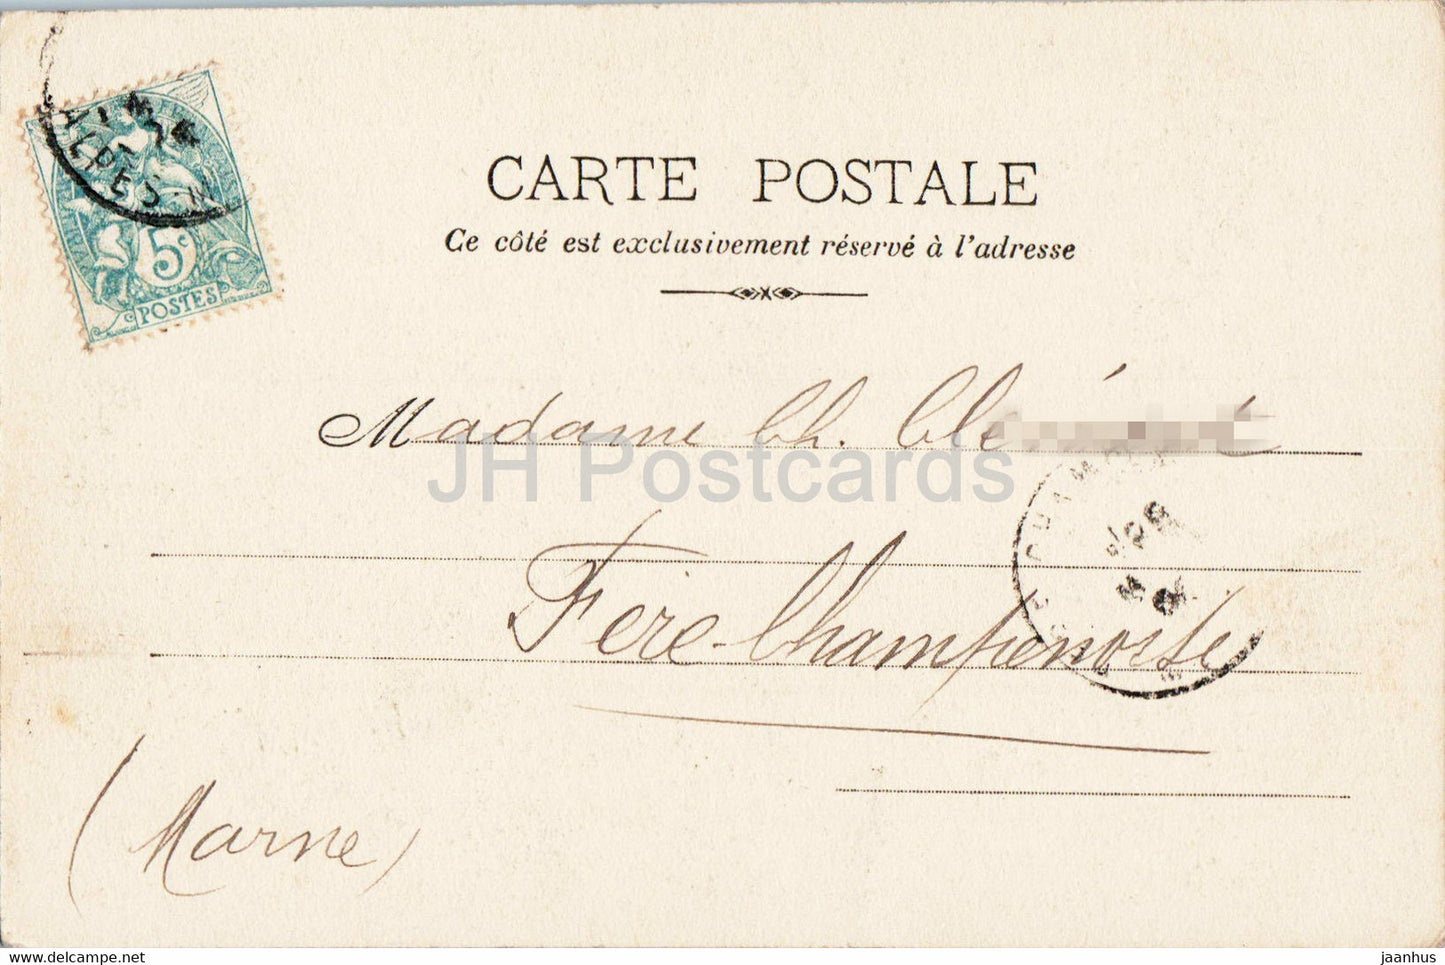 Beaulieu - Vue Generale - Vue prise de la petite Afrique - 328 - alte Postkarte - Frankreich - gebraucht